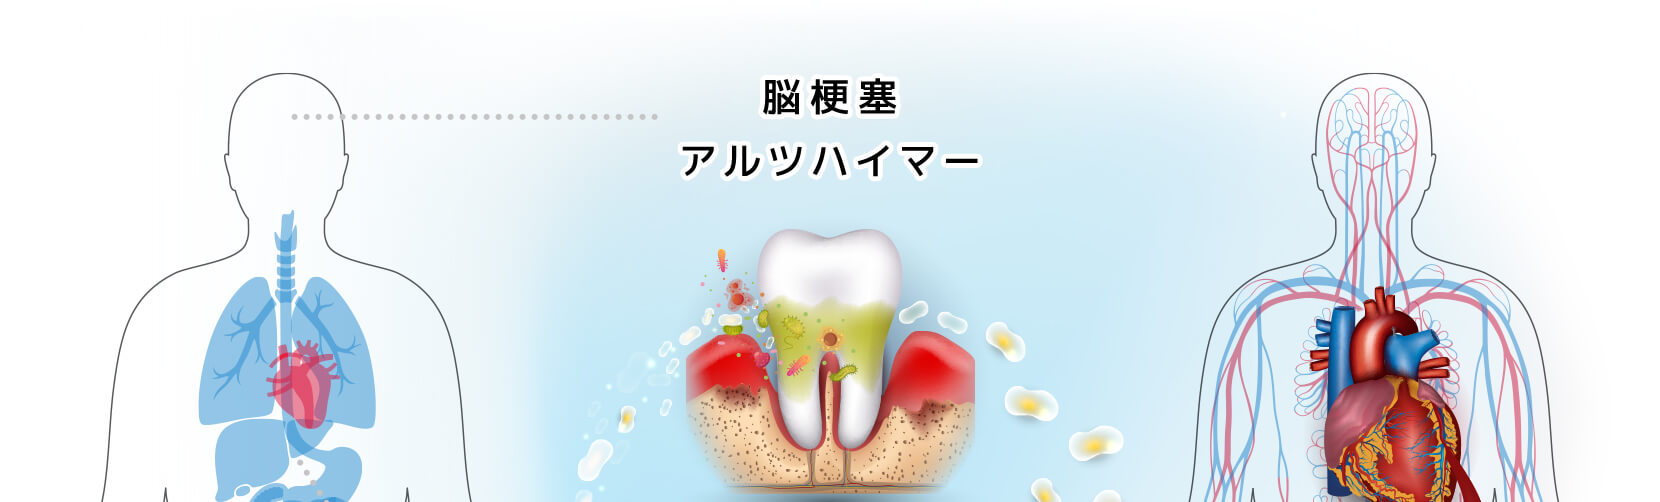 歯周病は糖尿病の合併症の一つ